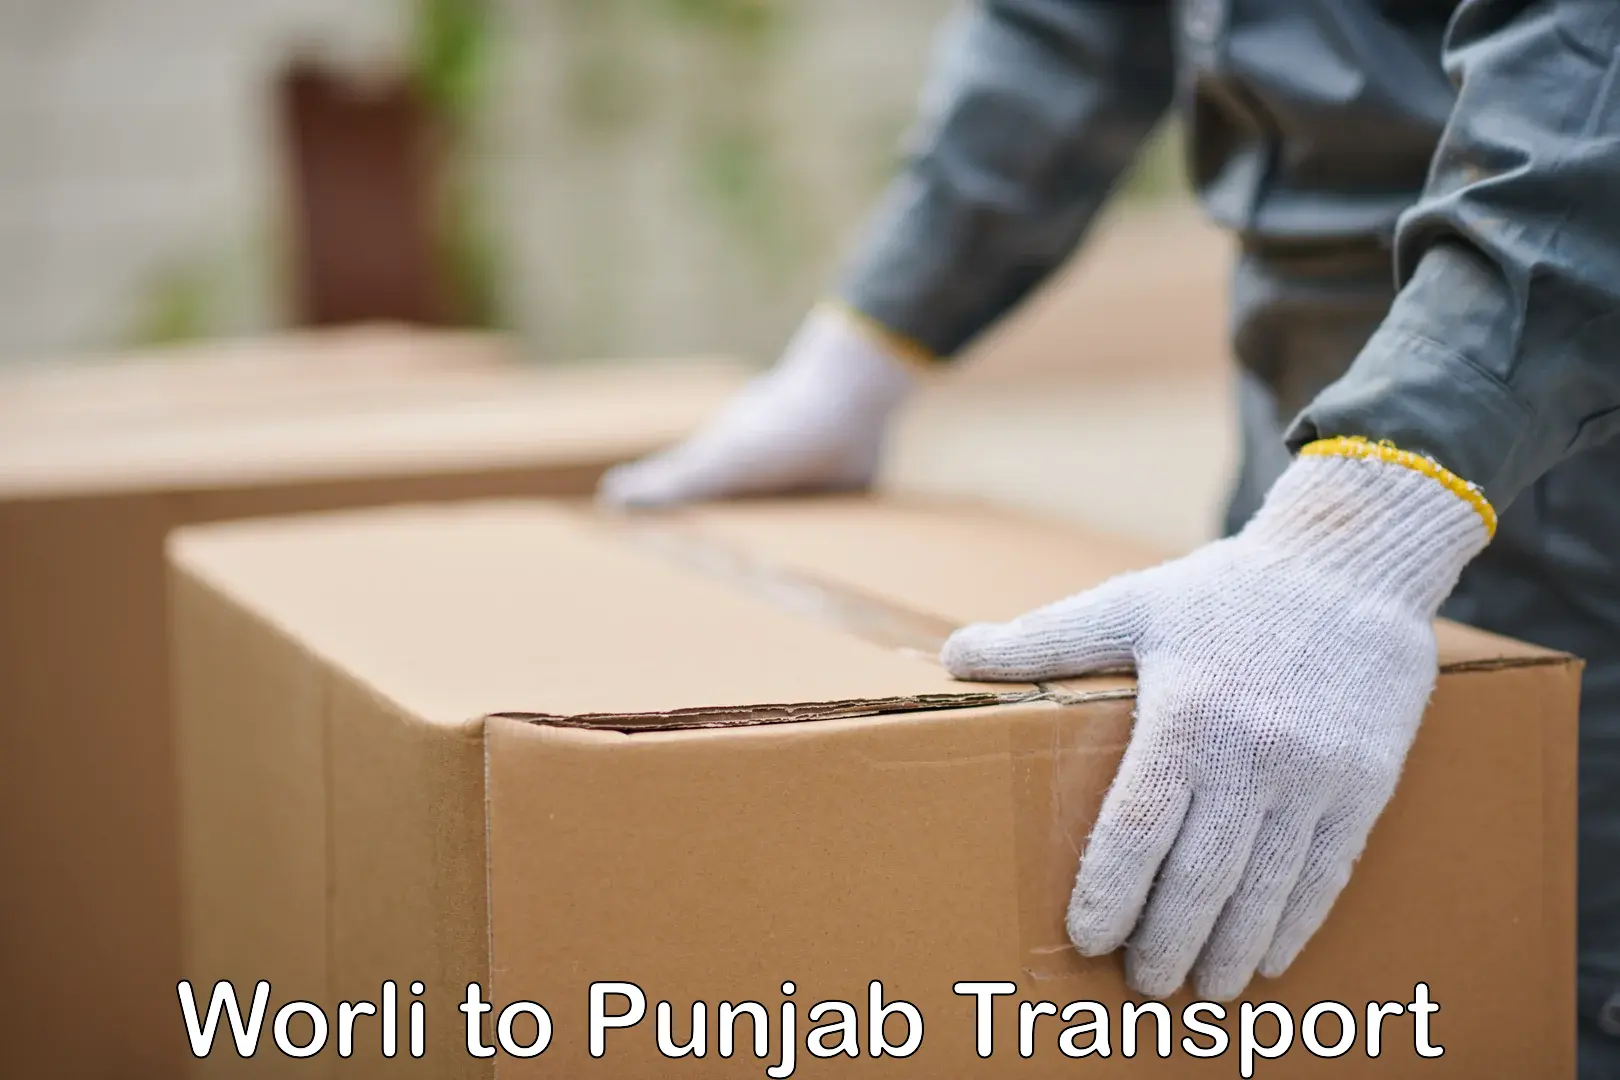 Express transport services Worli to Punjab